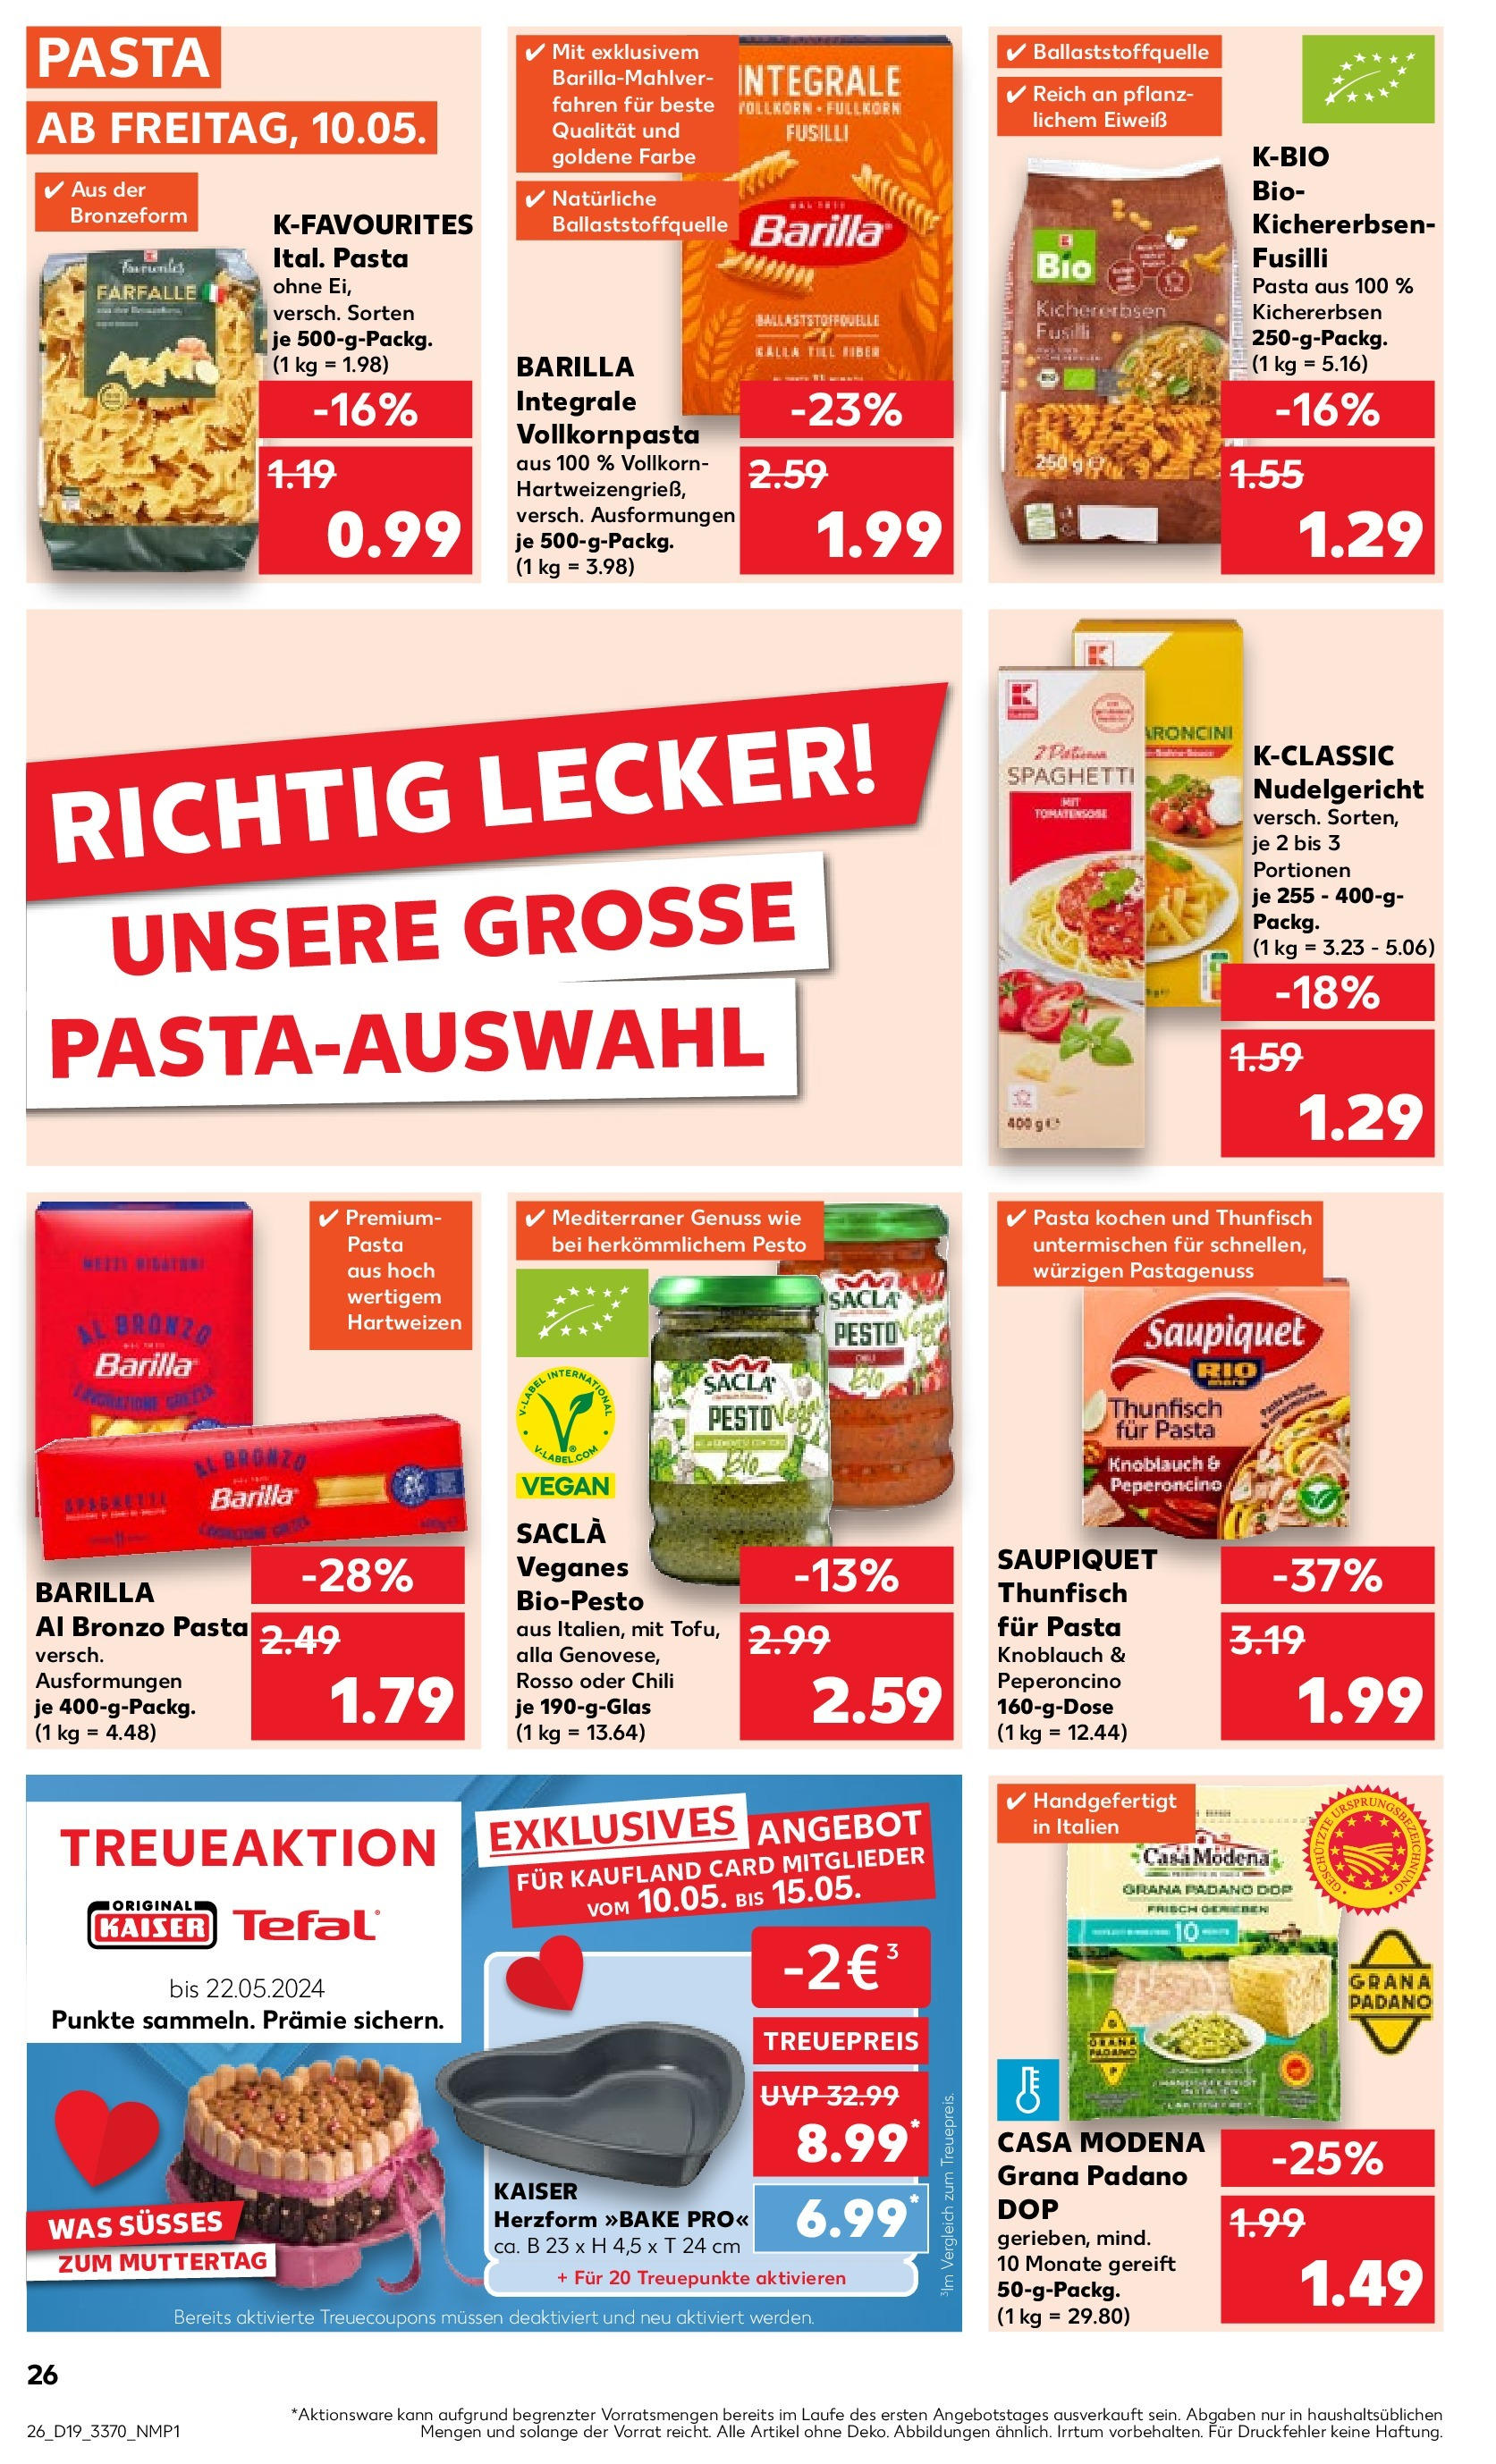 Kaufland - Berlin (ab 10.05.2024) » Angebote Online zum Blättern | Seite: 26 | Produkte: Barilla, Knoblauch, Chili, Pasta